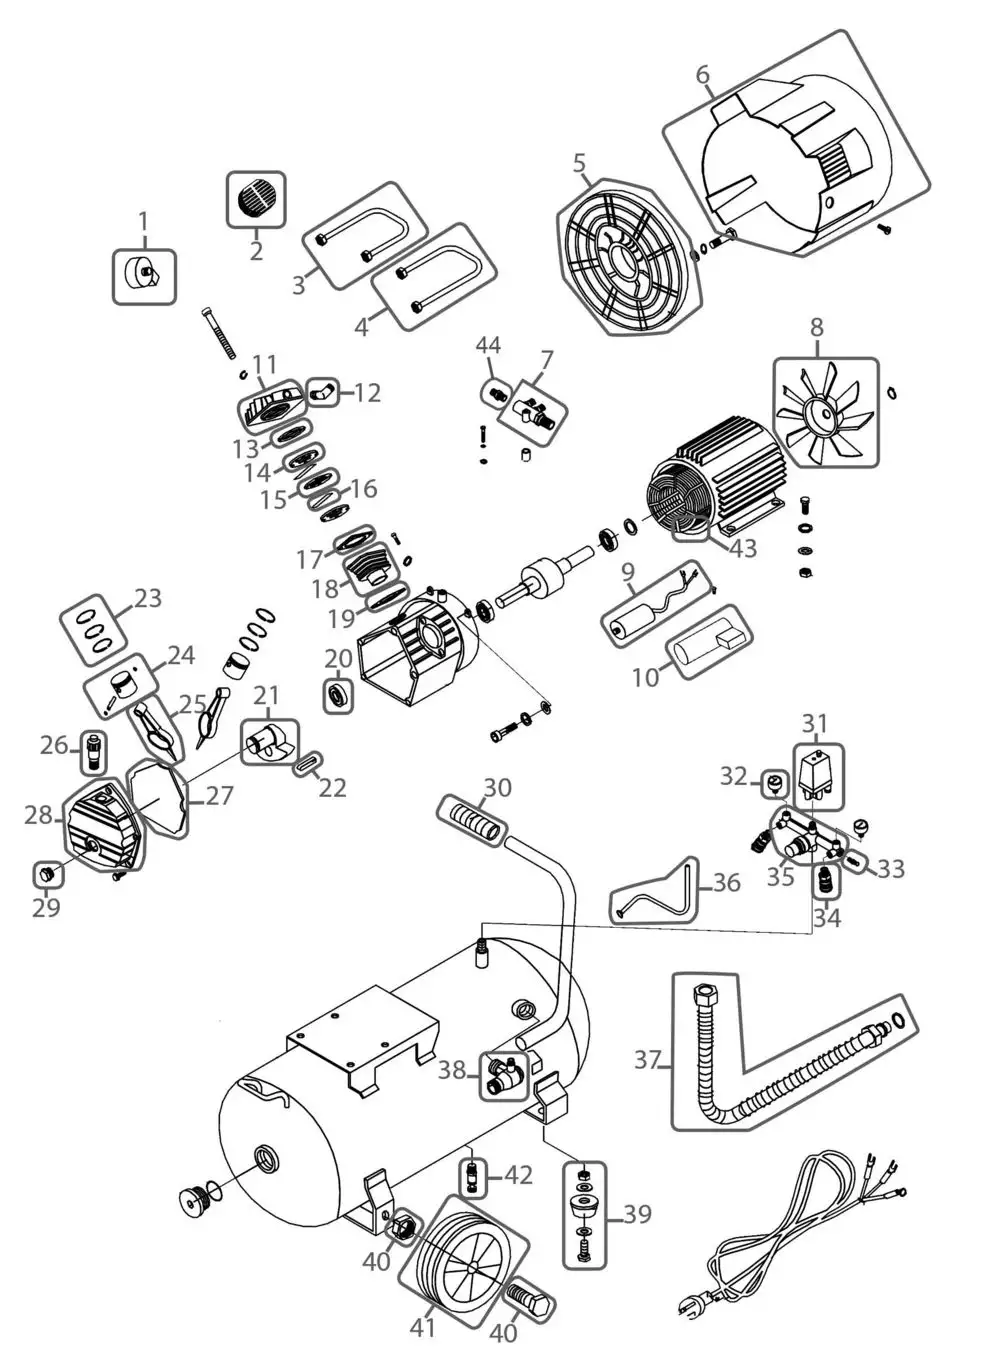 Zeichnung - GDE Kompressor 400/10/50 N - 50015